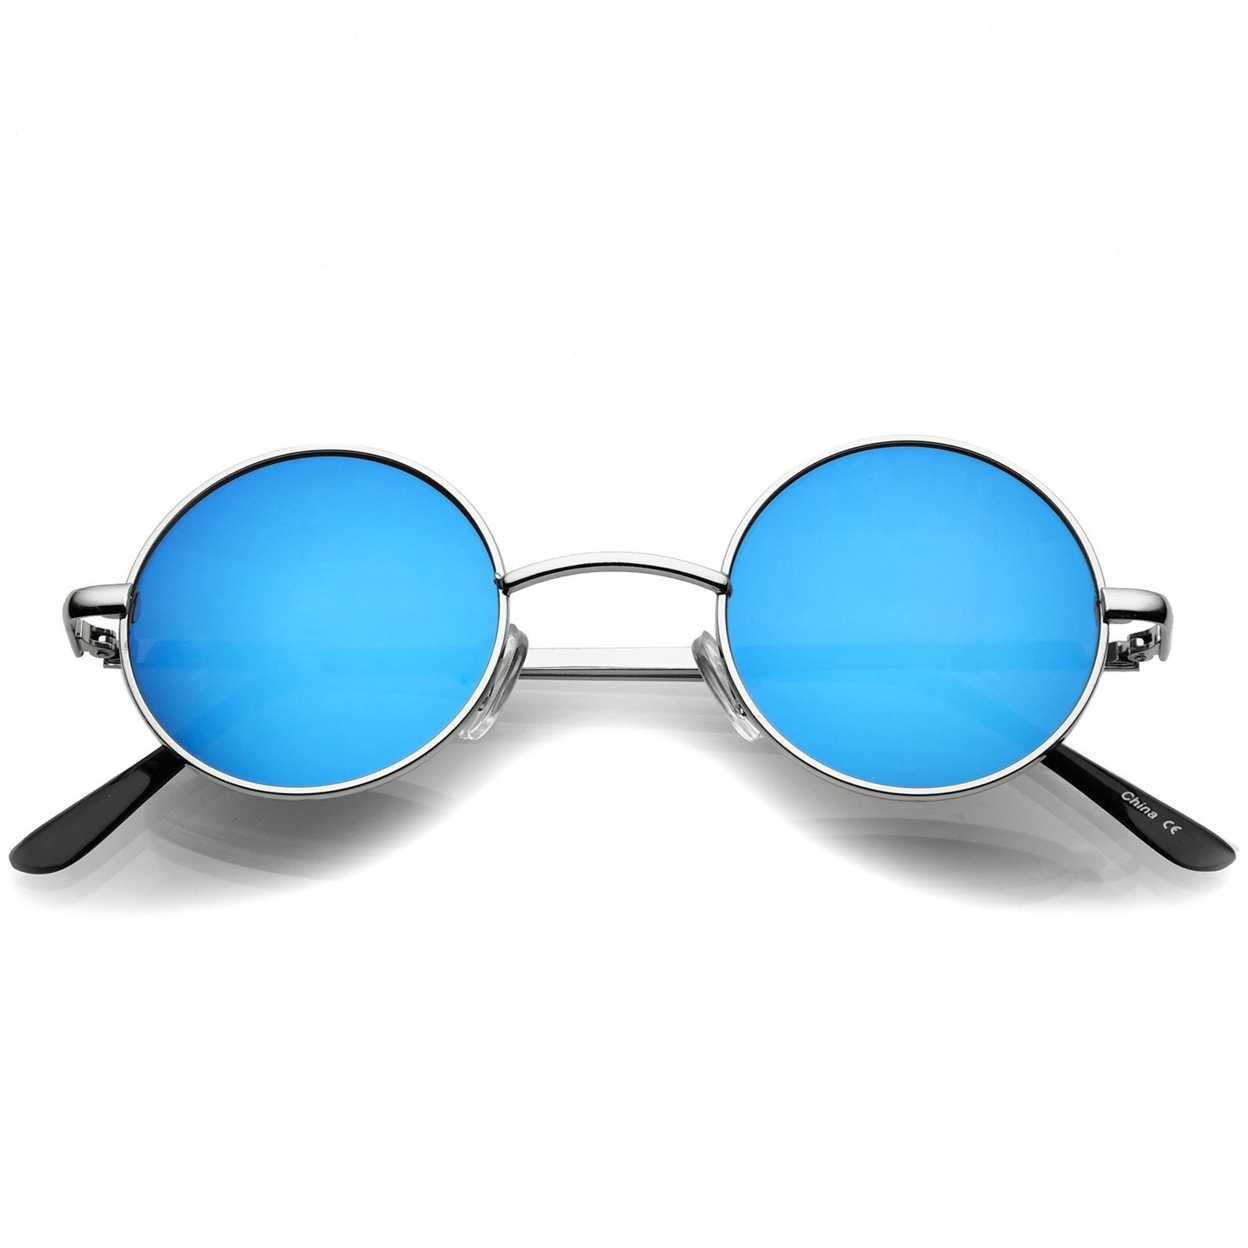 Small Retro Lennon Style Colored Mirror Lens Round Metal Sunglasses 41mm - Silver / Blue Mirror